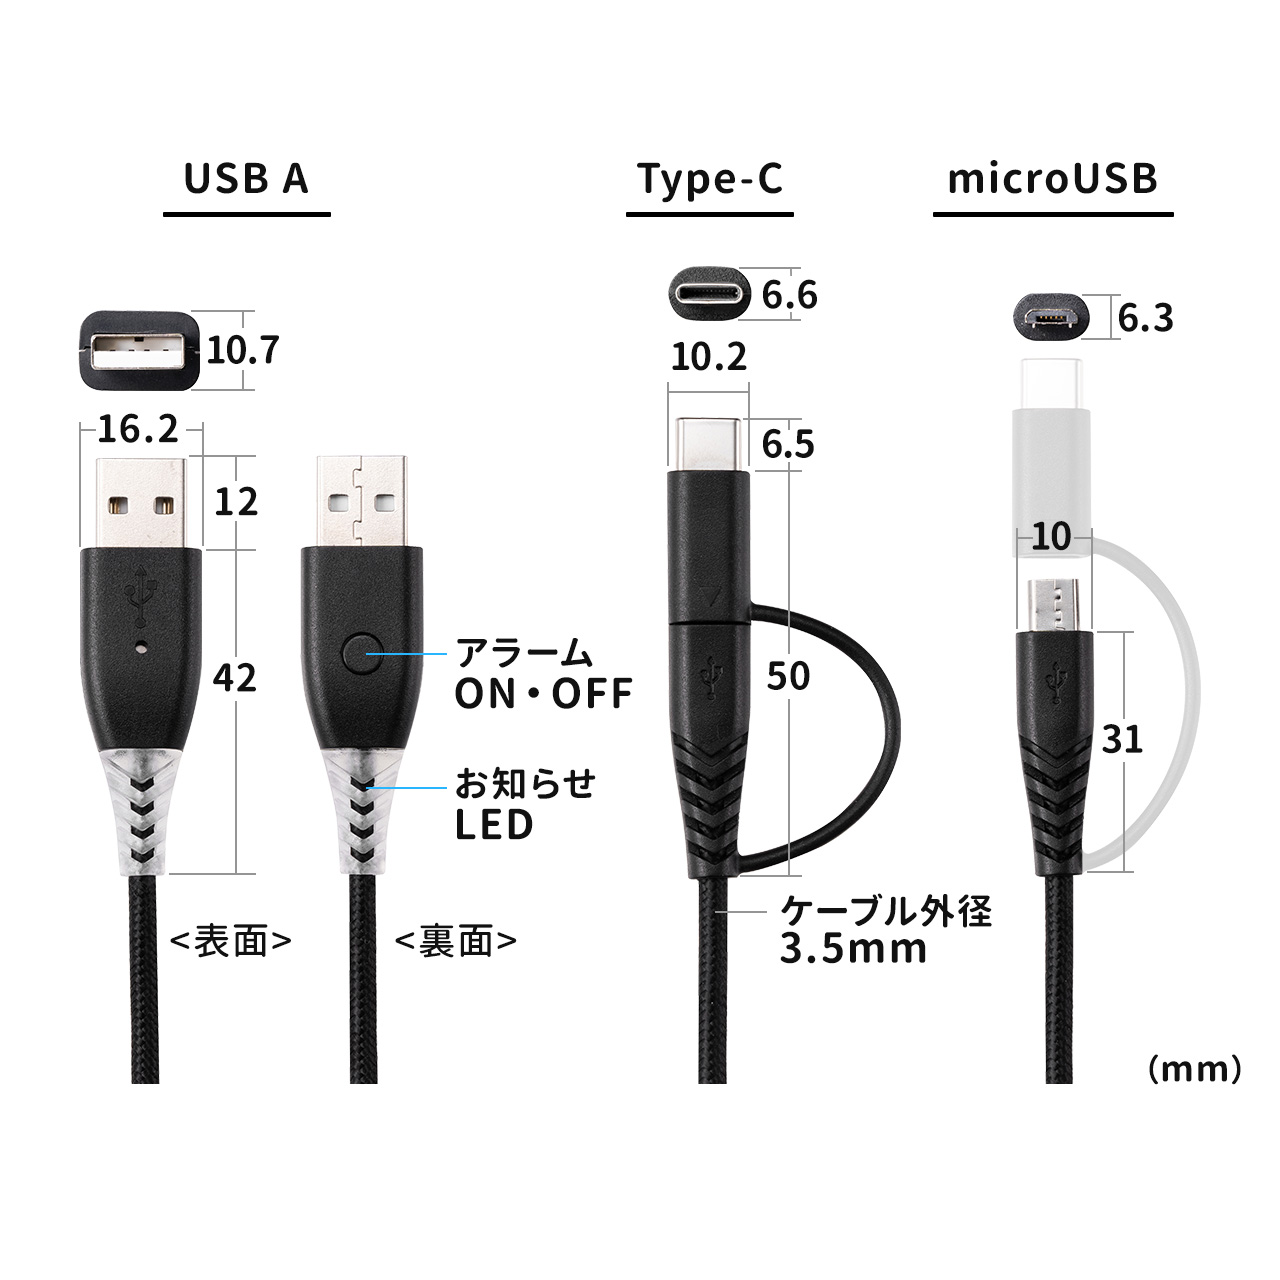 yő71%OFF匈ZՁz[dm点P[u 2in1 USB Type-CP[u   USB2.0 1m [d f[^] X}z ^ubg ubN 500-USB069